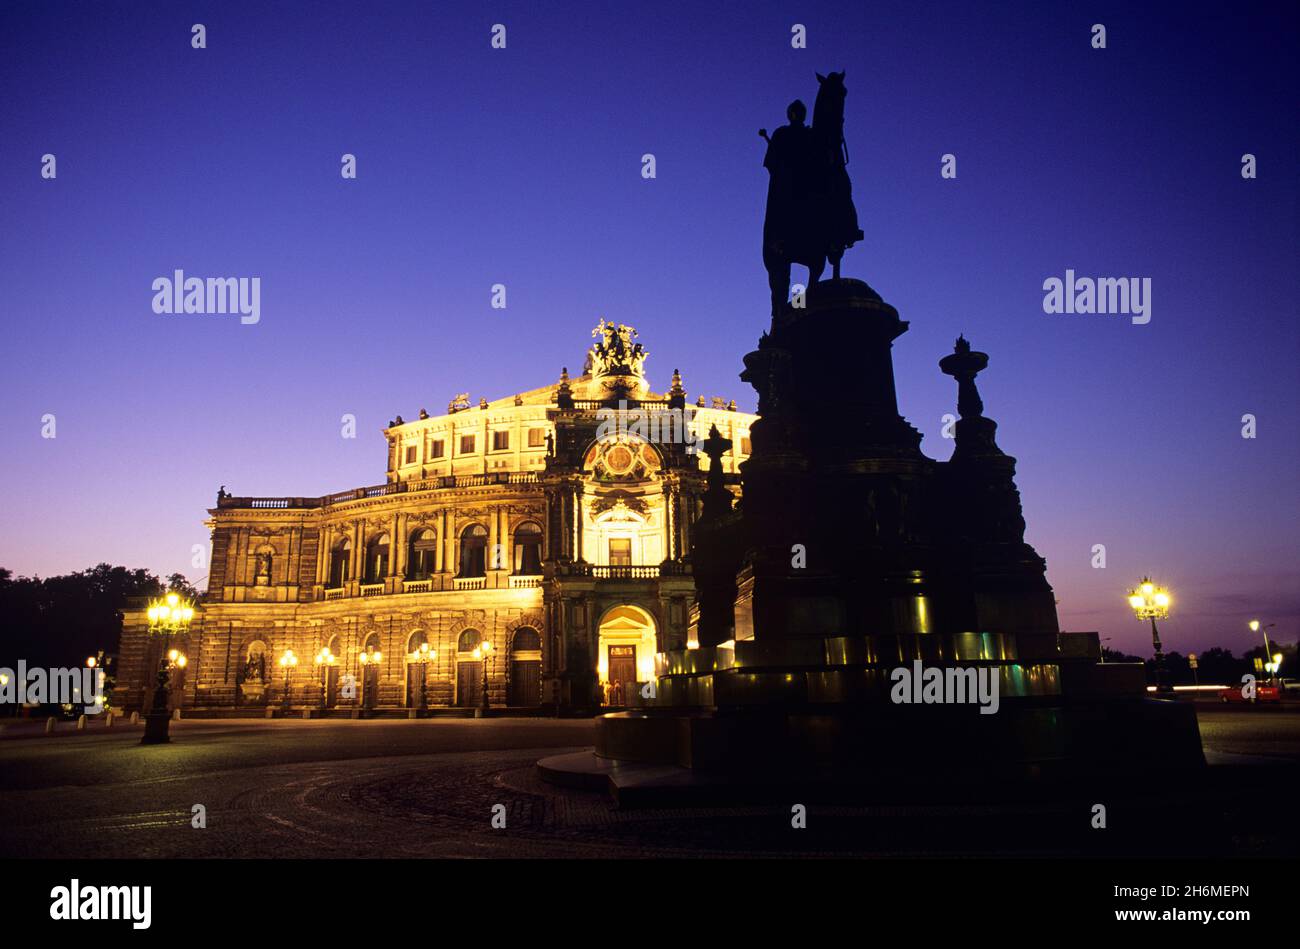 L'Opéra de Semper s'illumine la nuit Dresde, Saxe, Allemagne Banque D'Images